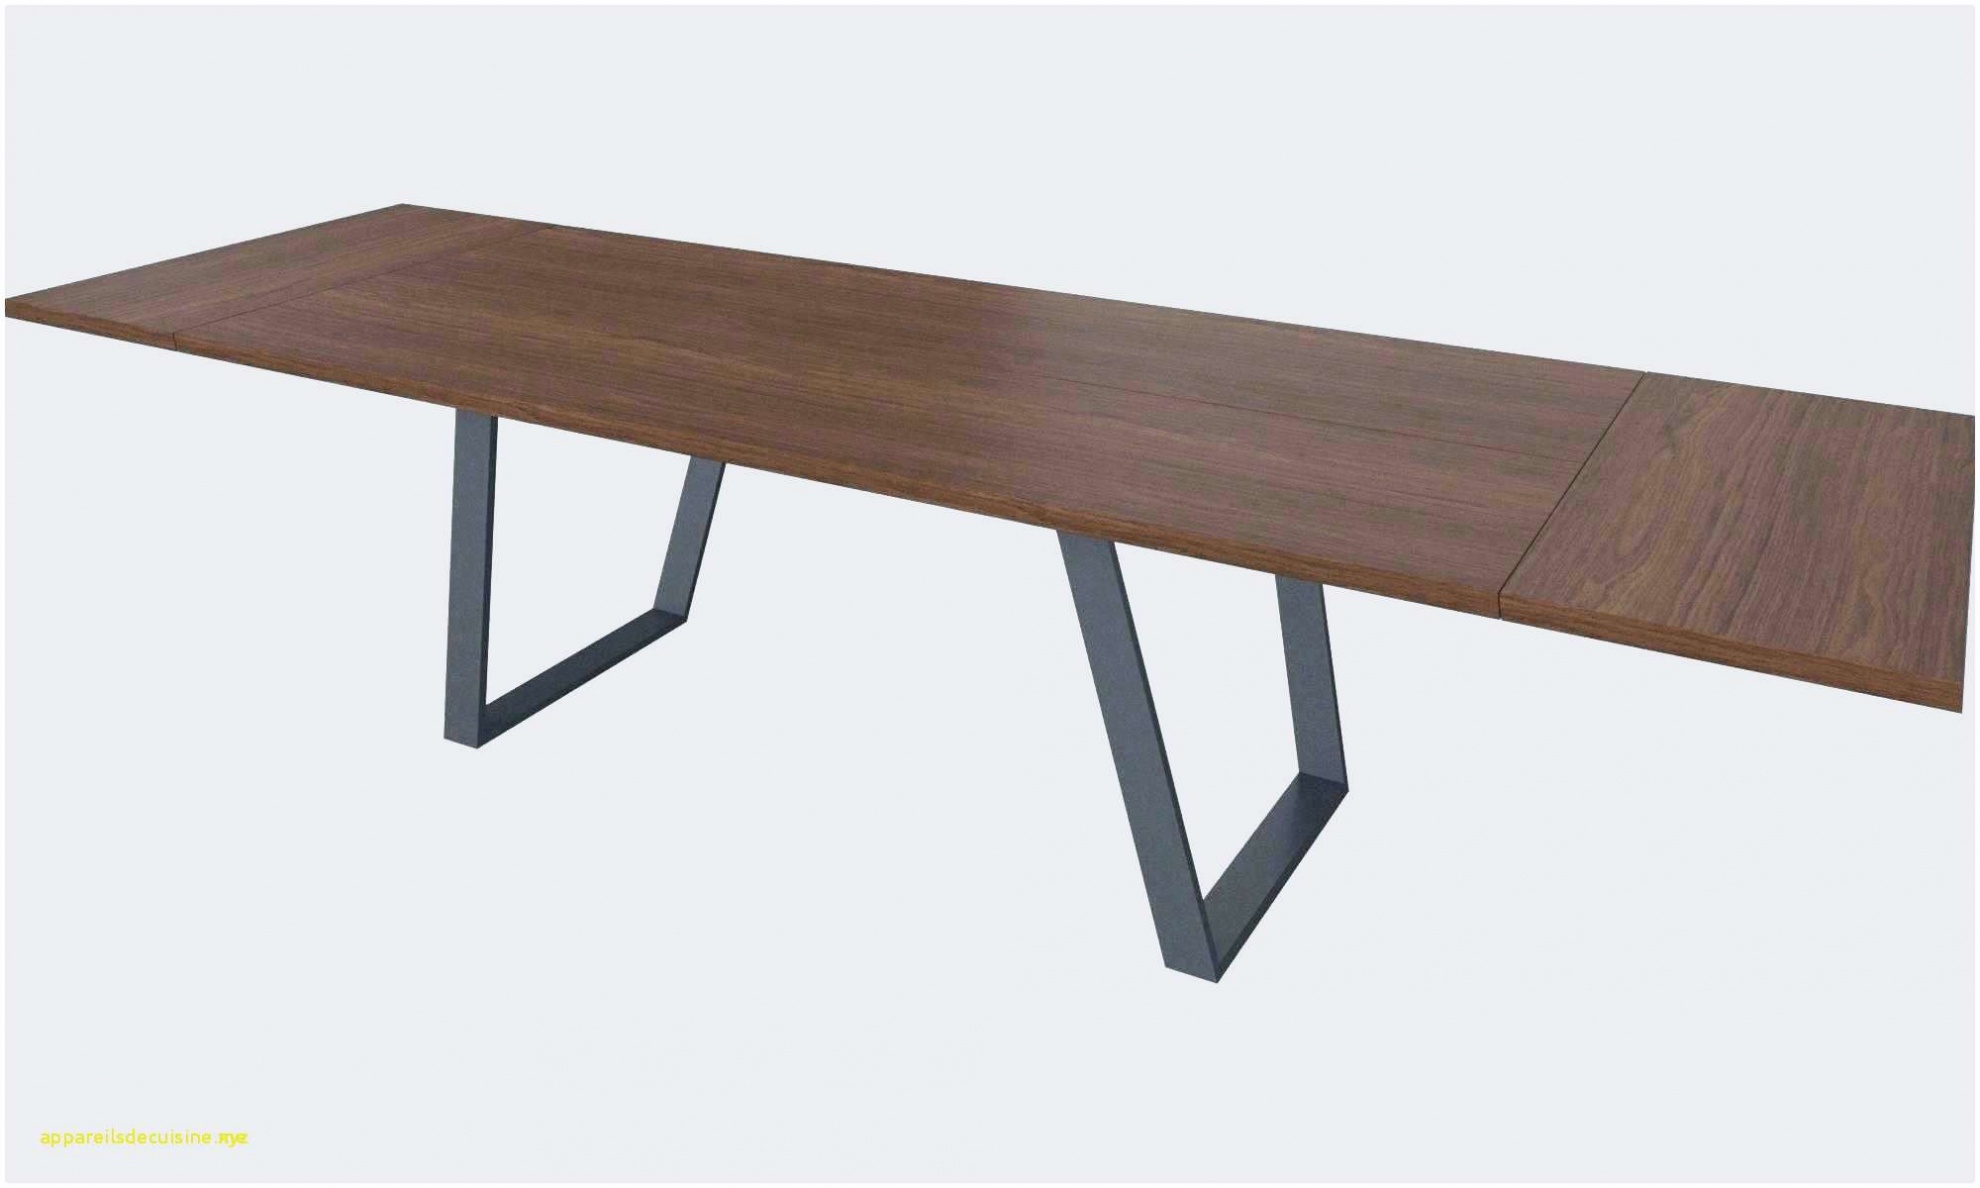 le meilleur de table ronde style industriel beau table industrielle table ronde style industriel of table ronde style industriel